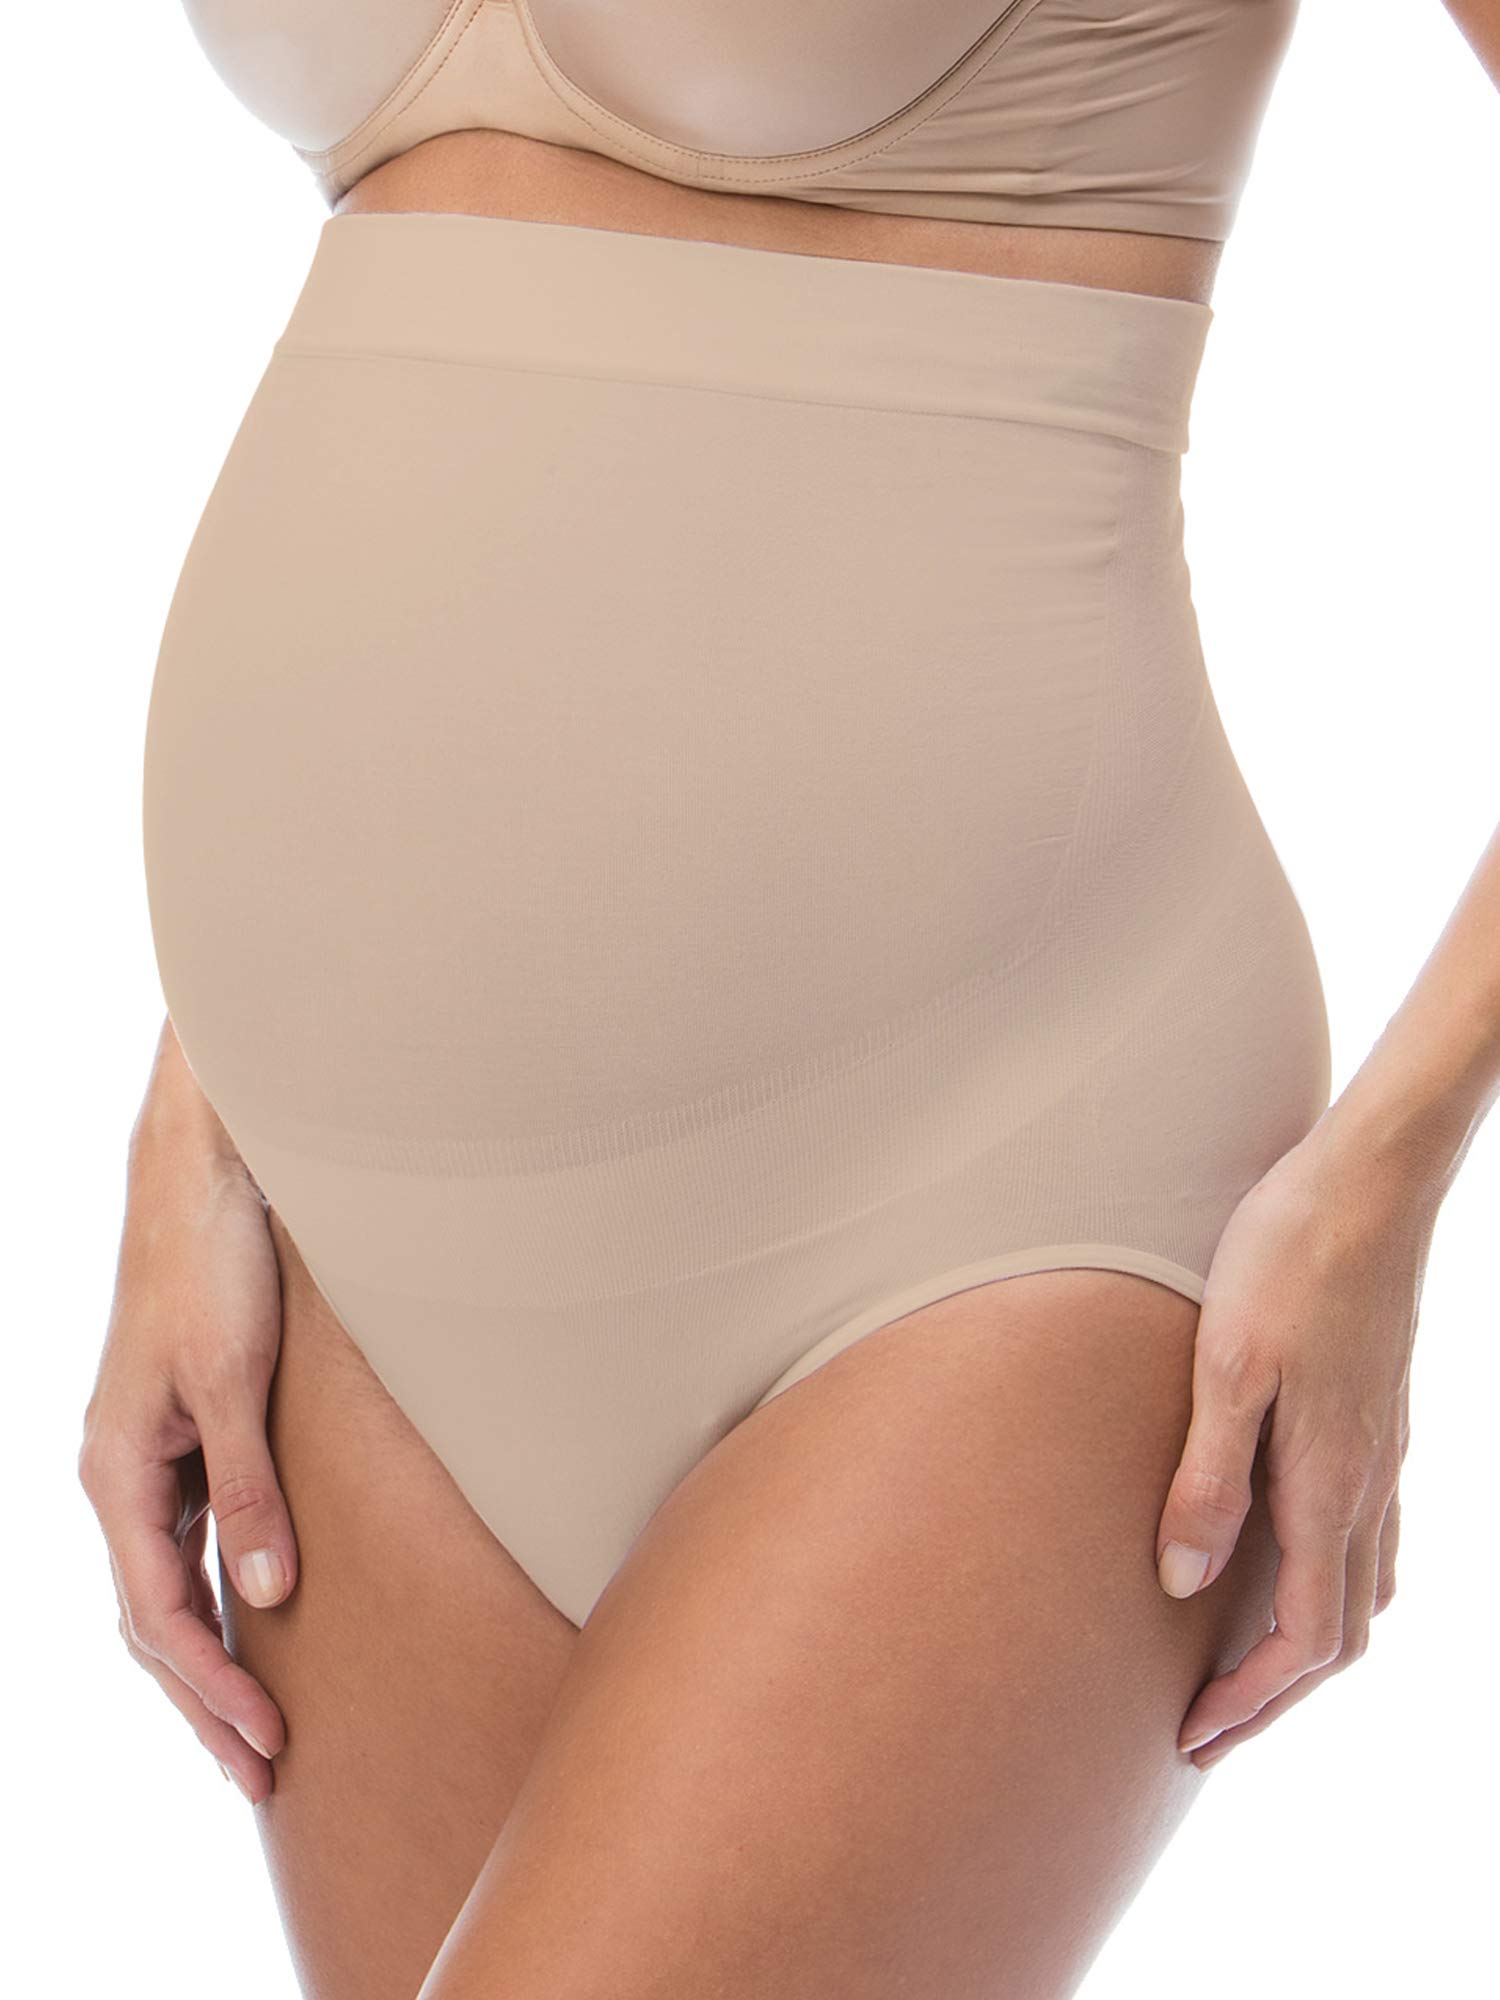 RelaxMaternity 5100 (Nude, XXL) Schwangerschafts-Slip Baumwolle mit eingebauter Unterleibstütze